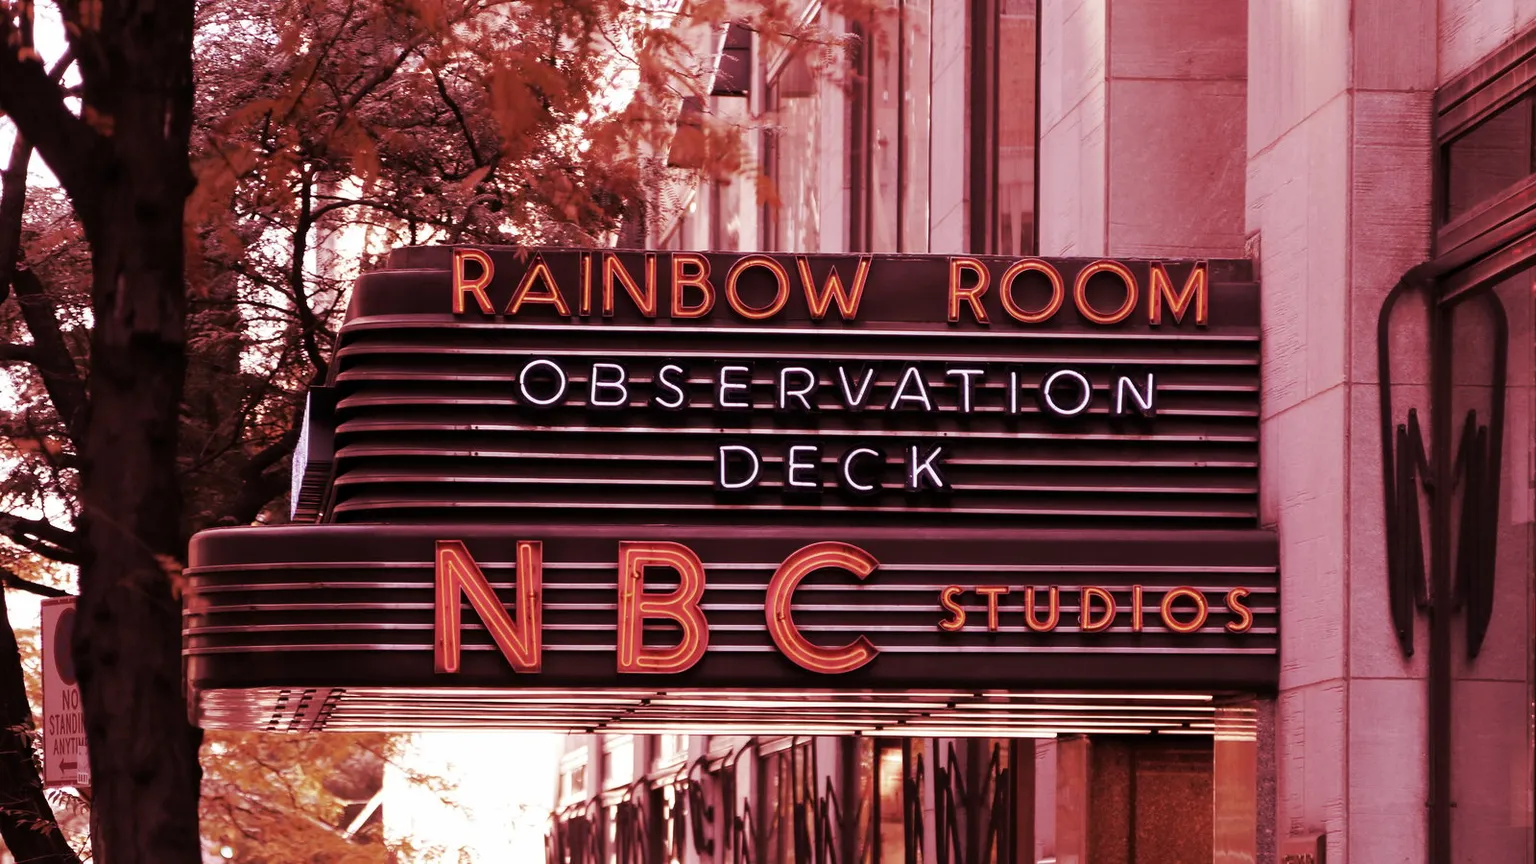 Sede mundial de NBC News, los estudios de Saturday Night Live y la Rainbow Room. Imagen: Shutterstock